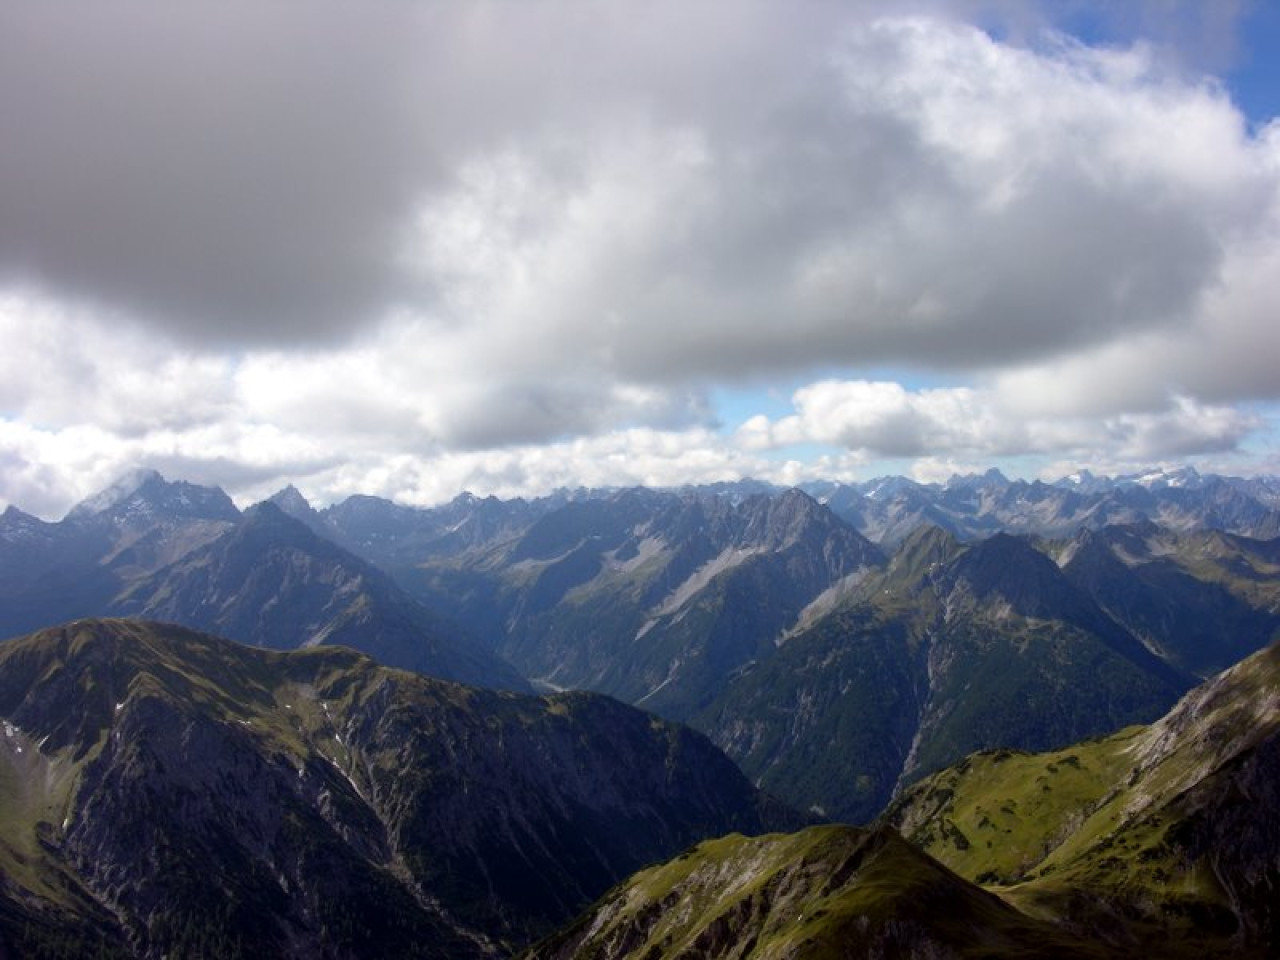  Lechtaler Alpen